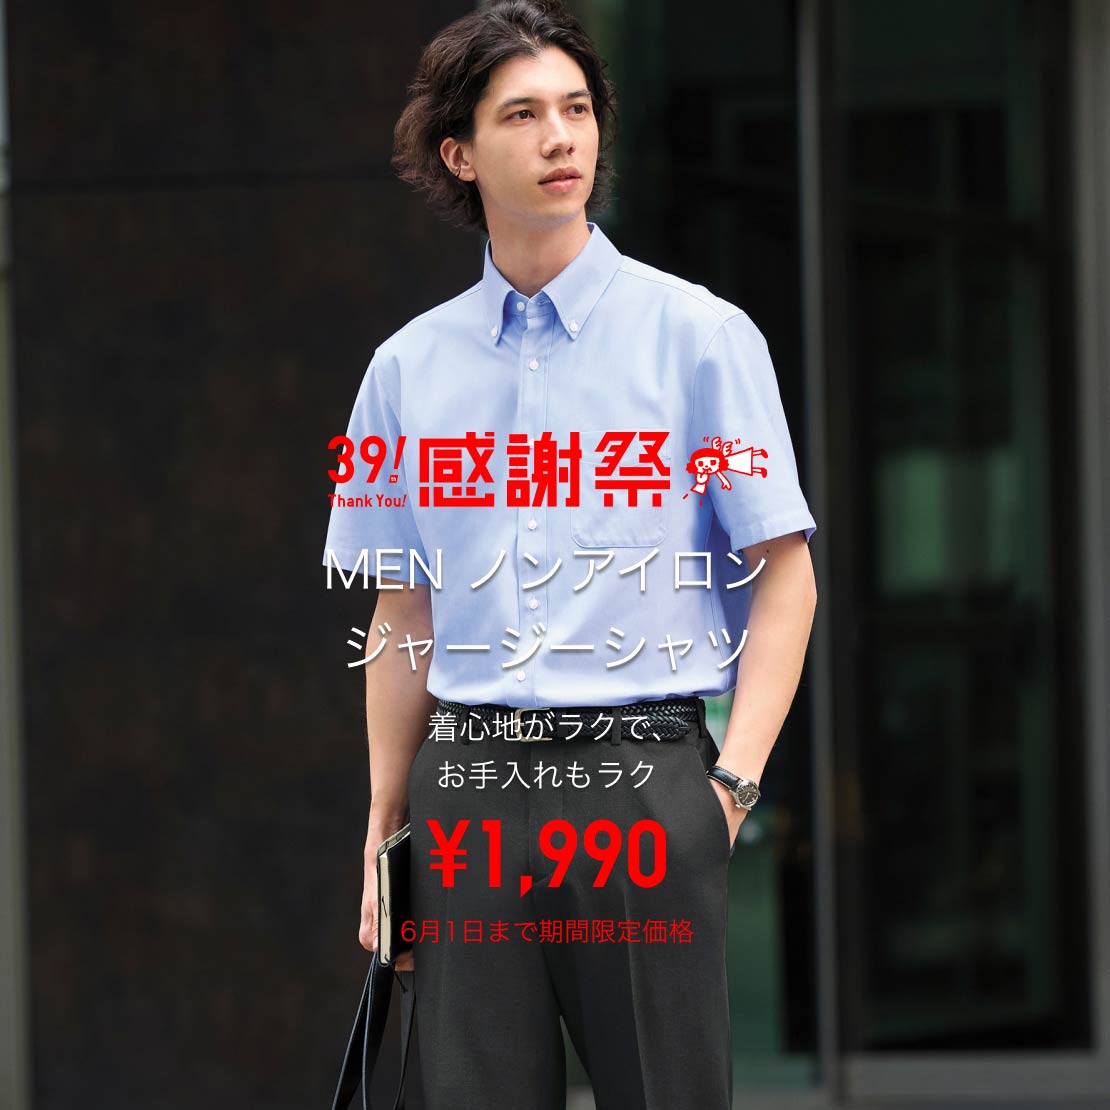 MEN ドライノンアイロンジャージーシャツ ¥1,990 6月1日まで期間限定価格